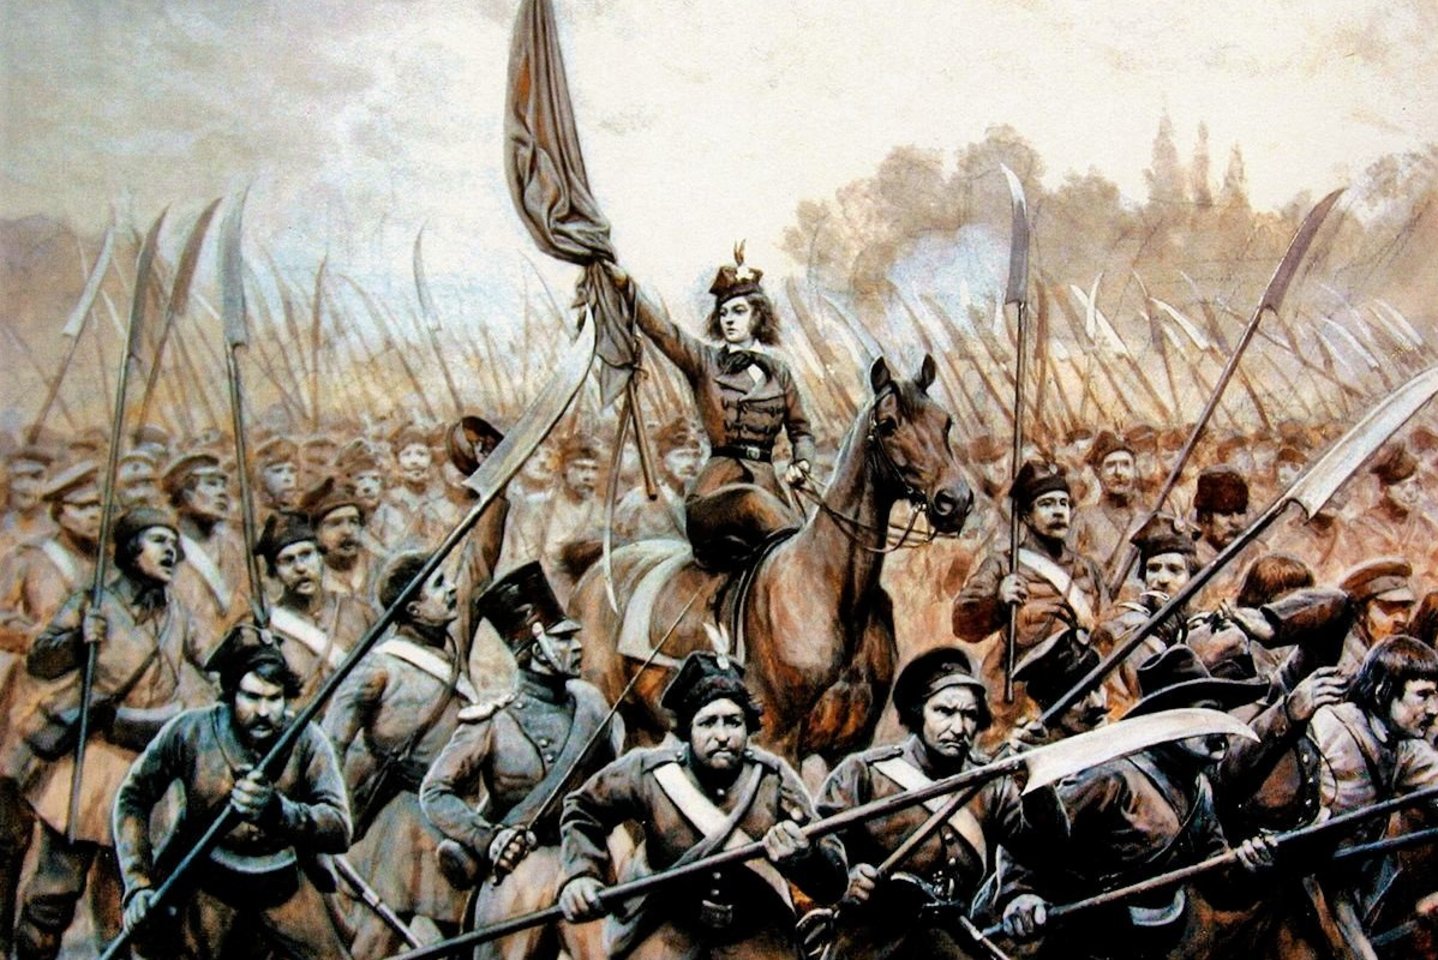 1806 m. gimė 1830–1831 m. sukilimo veikėja Emilija Pliaterytė. Su pusbroliu Dusetų apylinkėse suorganizavo 200 raitų šaulių, 60 raitininkų, kelių šimtų dalgiais ir medžiokliniais šautuvais ginkluotų pėstininkų sukilėlių būrį ir pradėjo sukilimą. Mirė 1831 m.<br>wikipedia